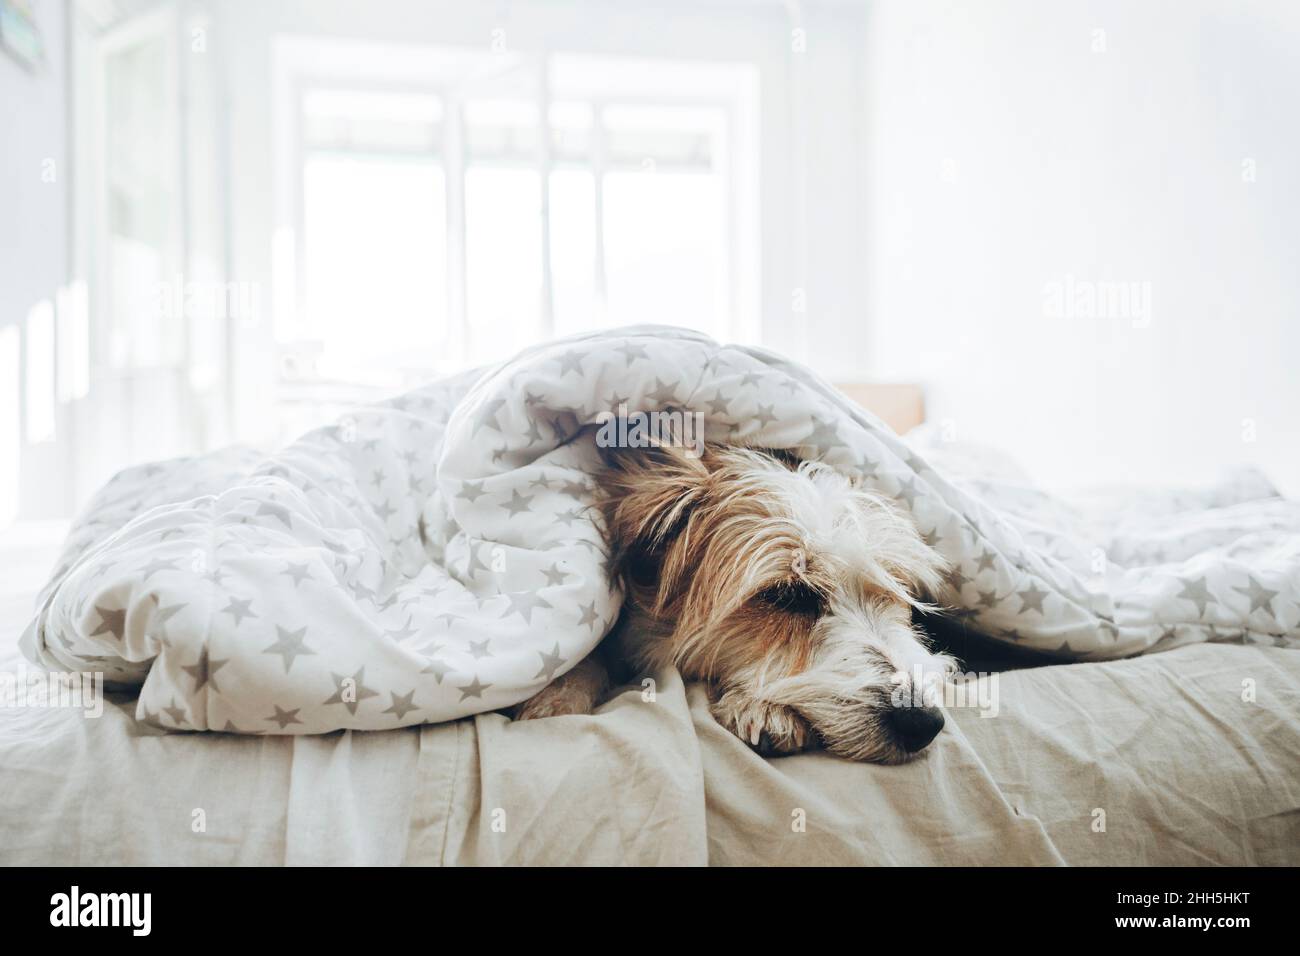 Dog sleeping under blanket in bedroom Stock Photo